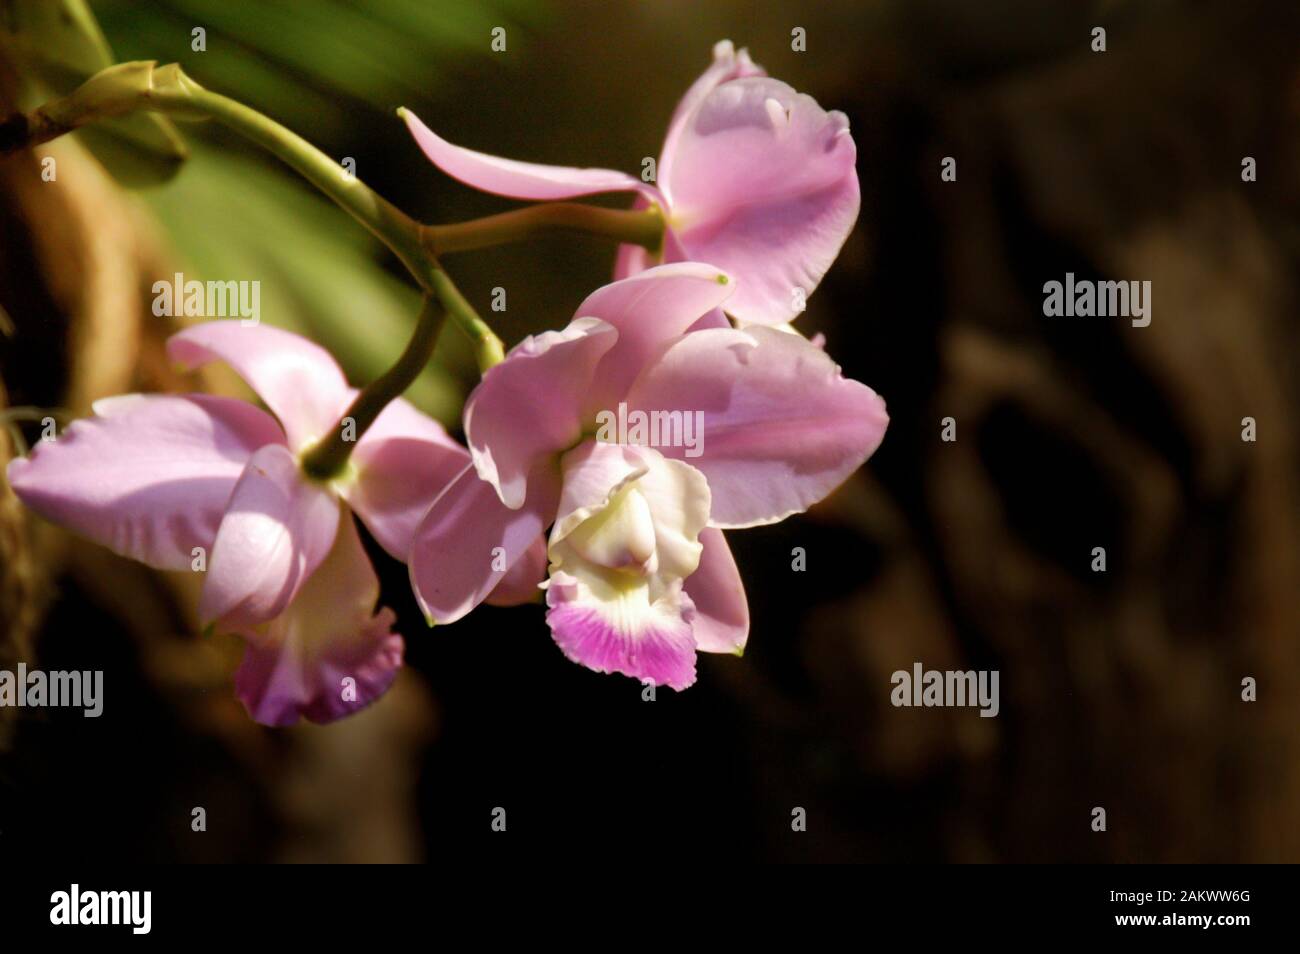 vicino al centro rosa e viola orchidee cluster primo piano con sfondo morbido Foto Stock